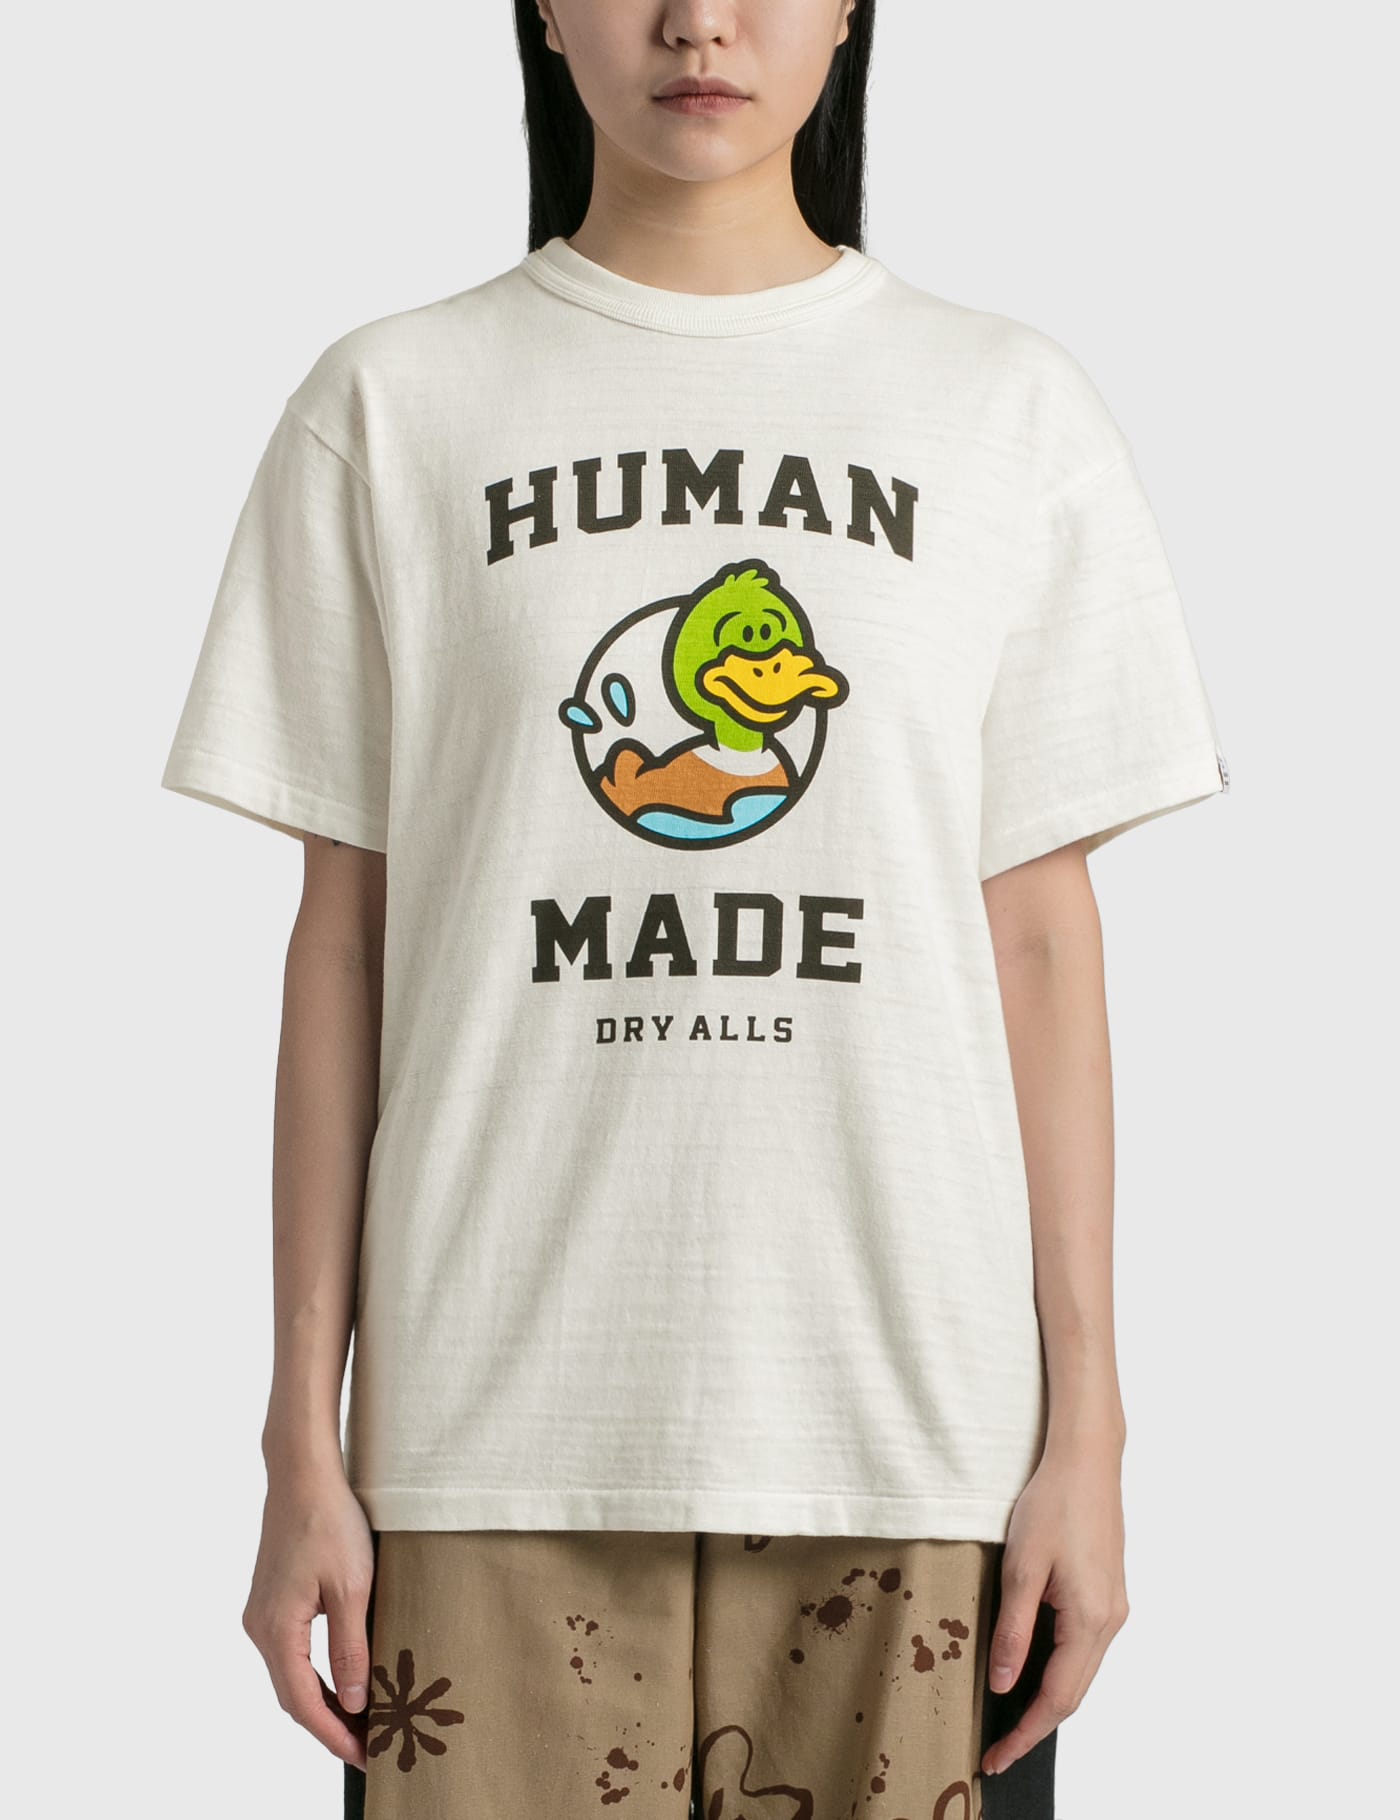 HUMAN MADE KAWS T Shirt #1 white 2XL